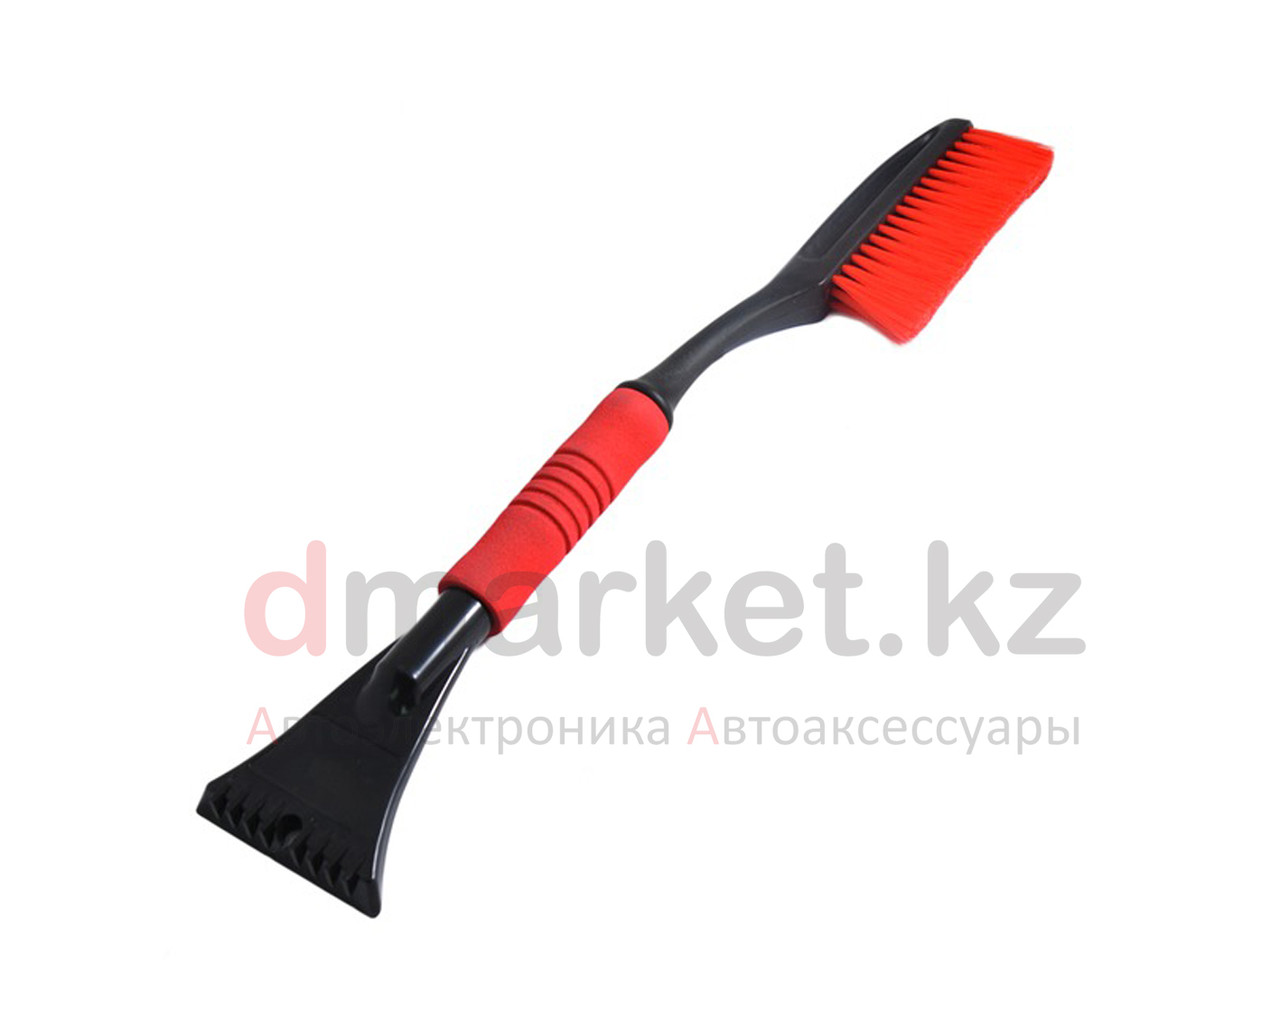 Щетка для уборки снега CN2230, удобная ручка, скребок, длина 60 см